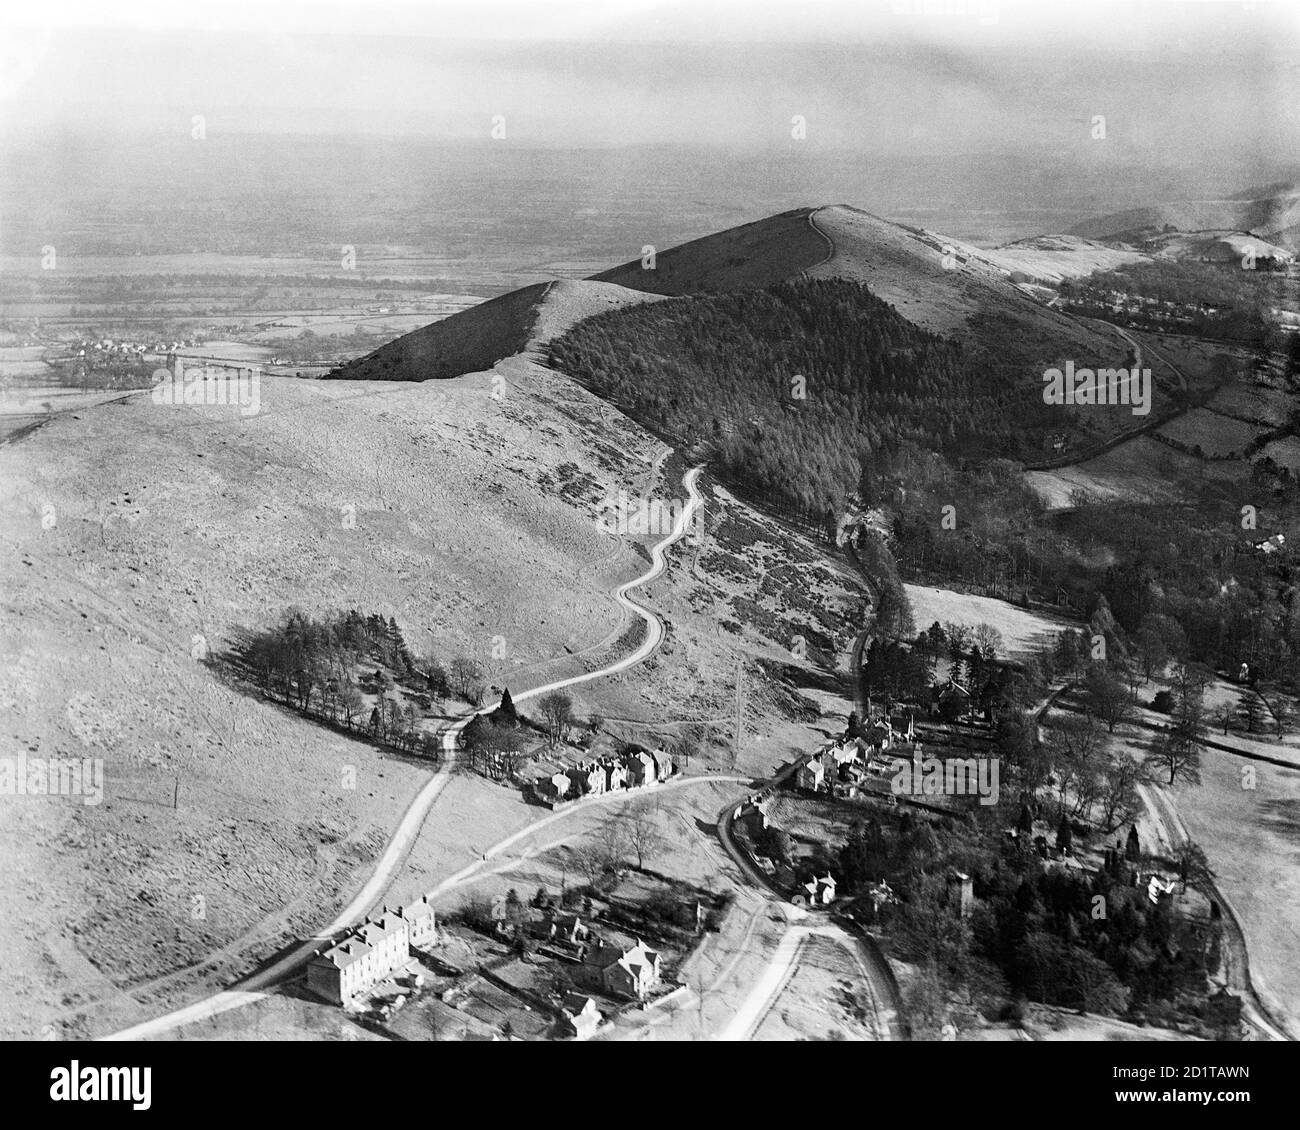 MALVERN HILLS, Herefordshire e Worcestershire. Vista aerea a sud di Upper Colwall. Jublee Drive si snoda attraverso una piantagione lungo il lato occidentale del crinale. Fotografato nel 1921. Aerofilms Collection (vedi link). Foto Stock